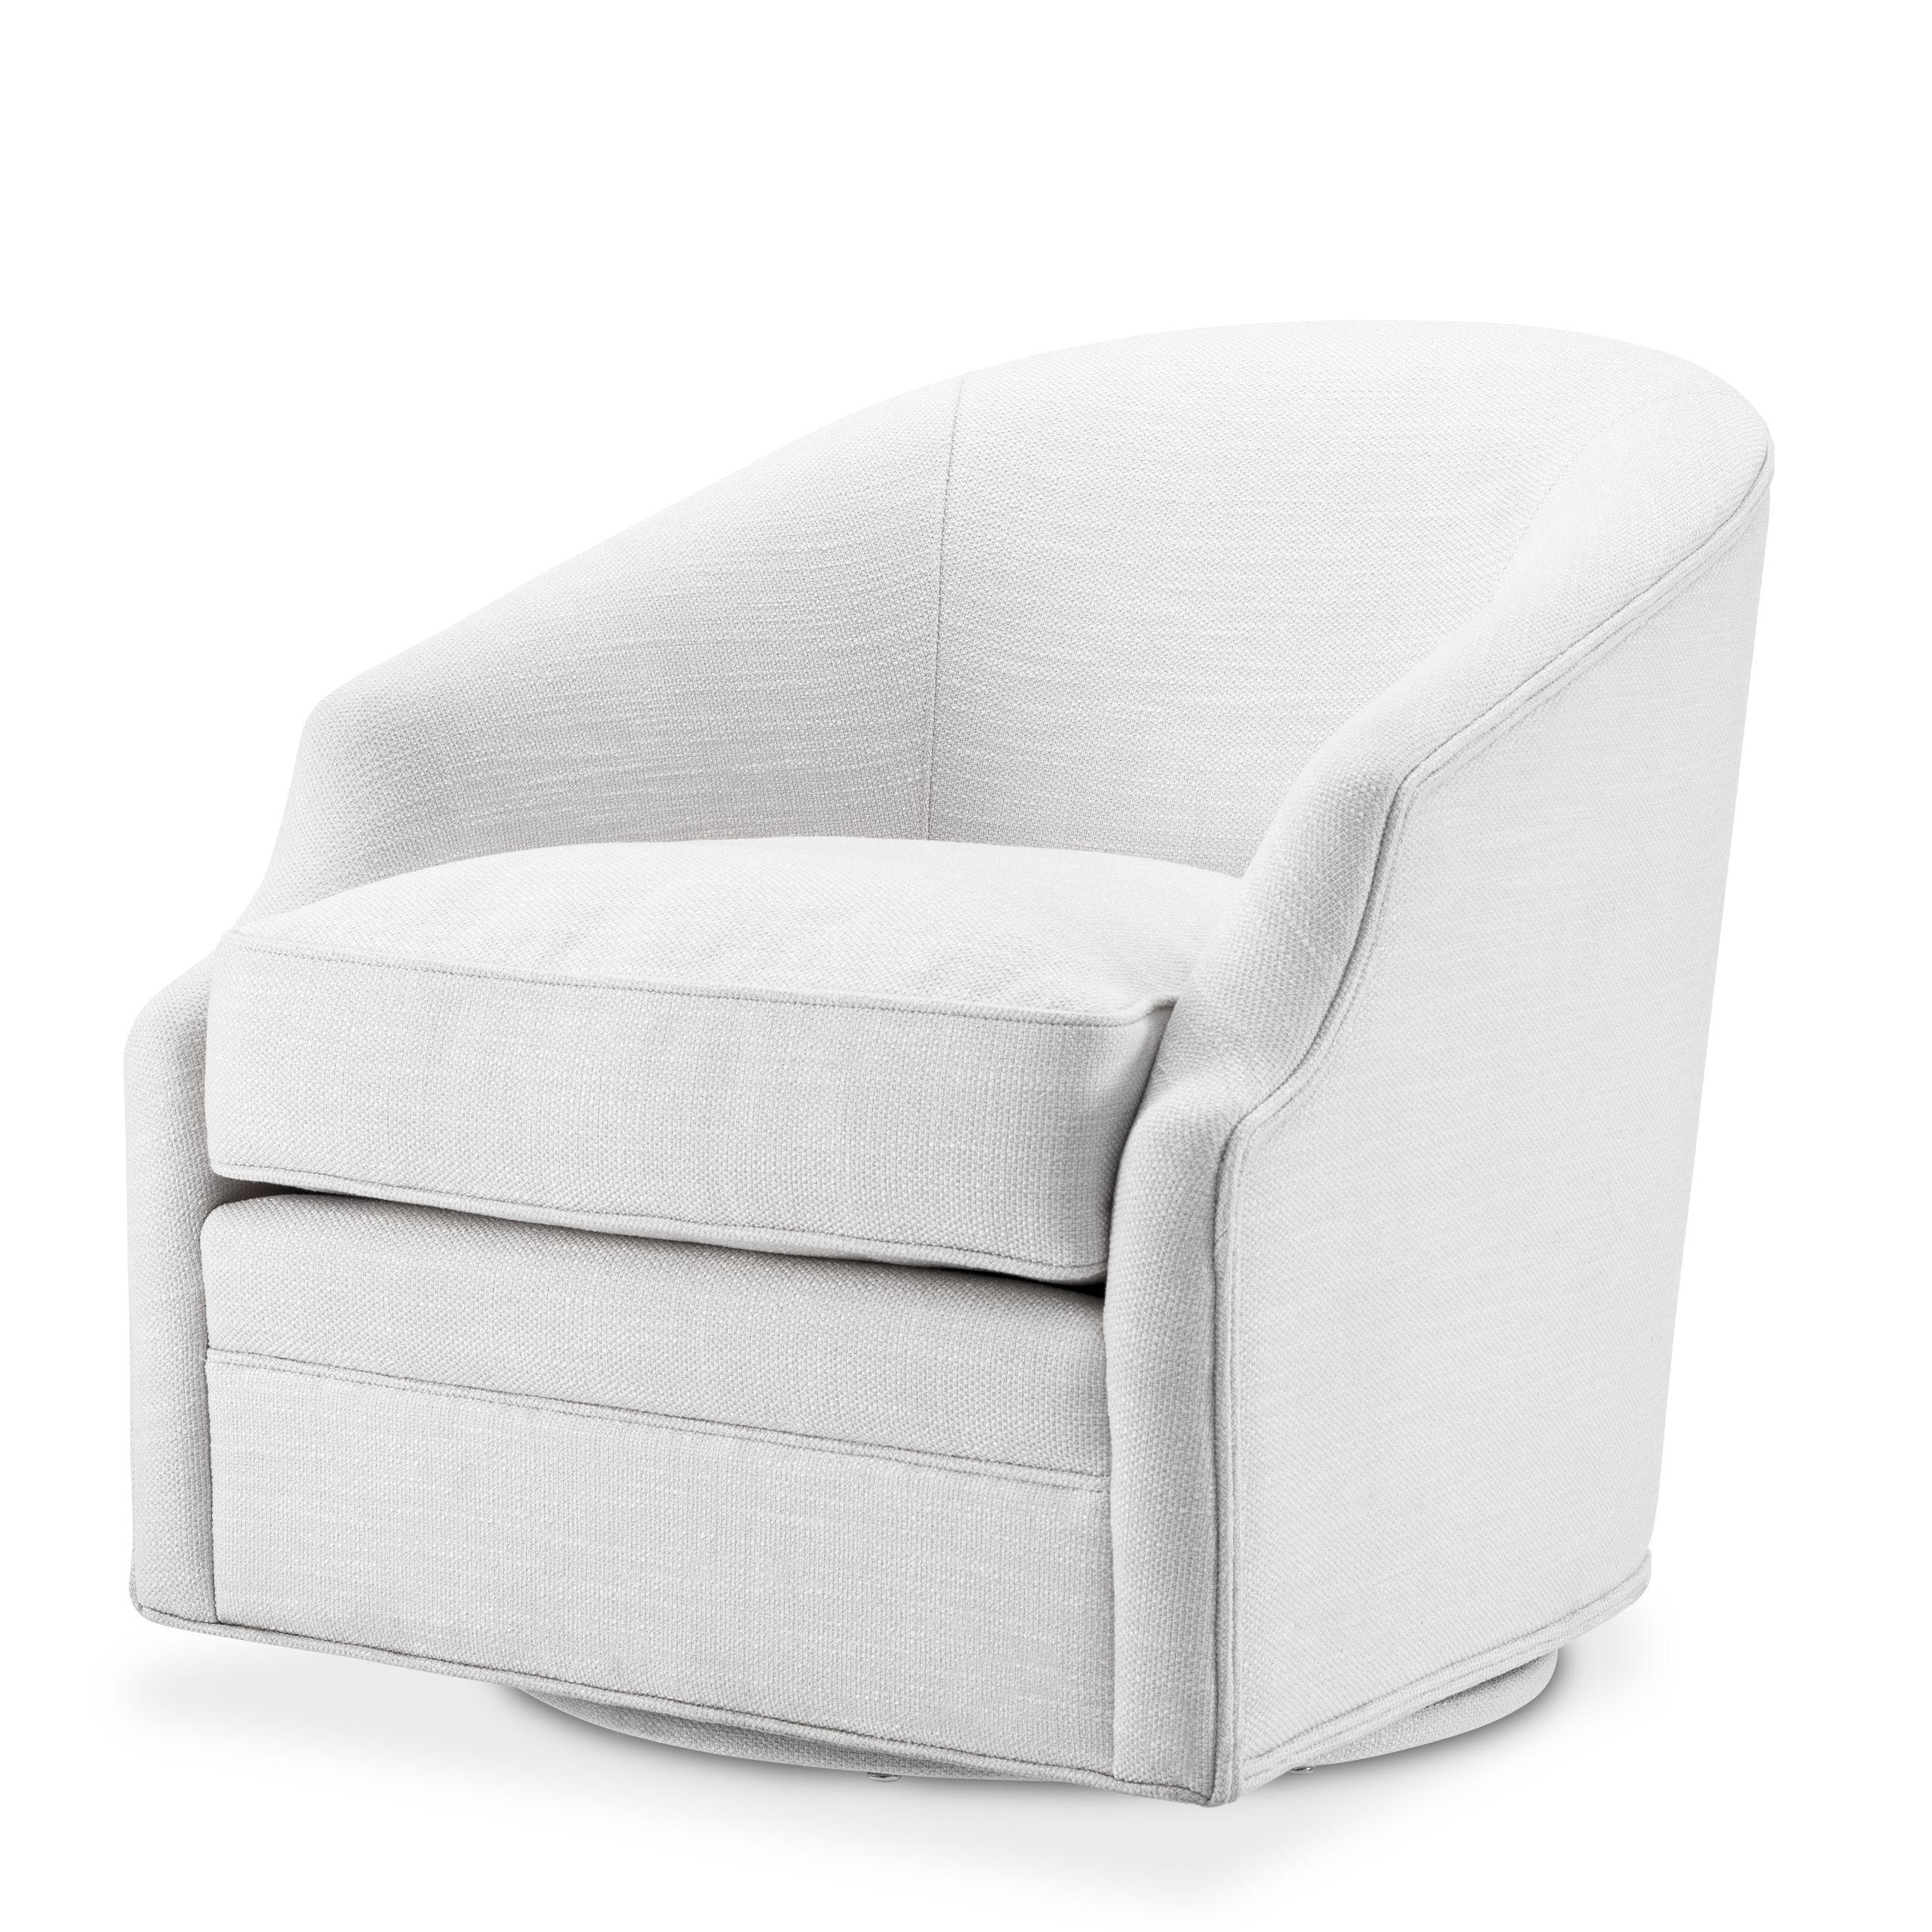 Купить Крутящееся кресло Swivel Chair Gustav в интернет-магазине roooms.ru